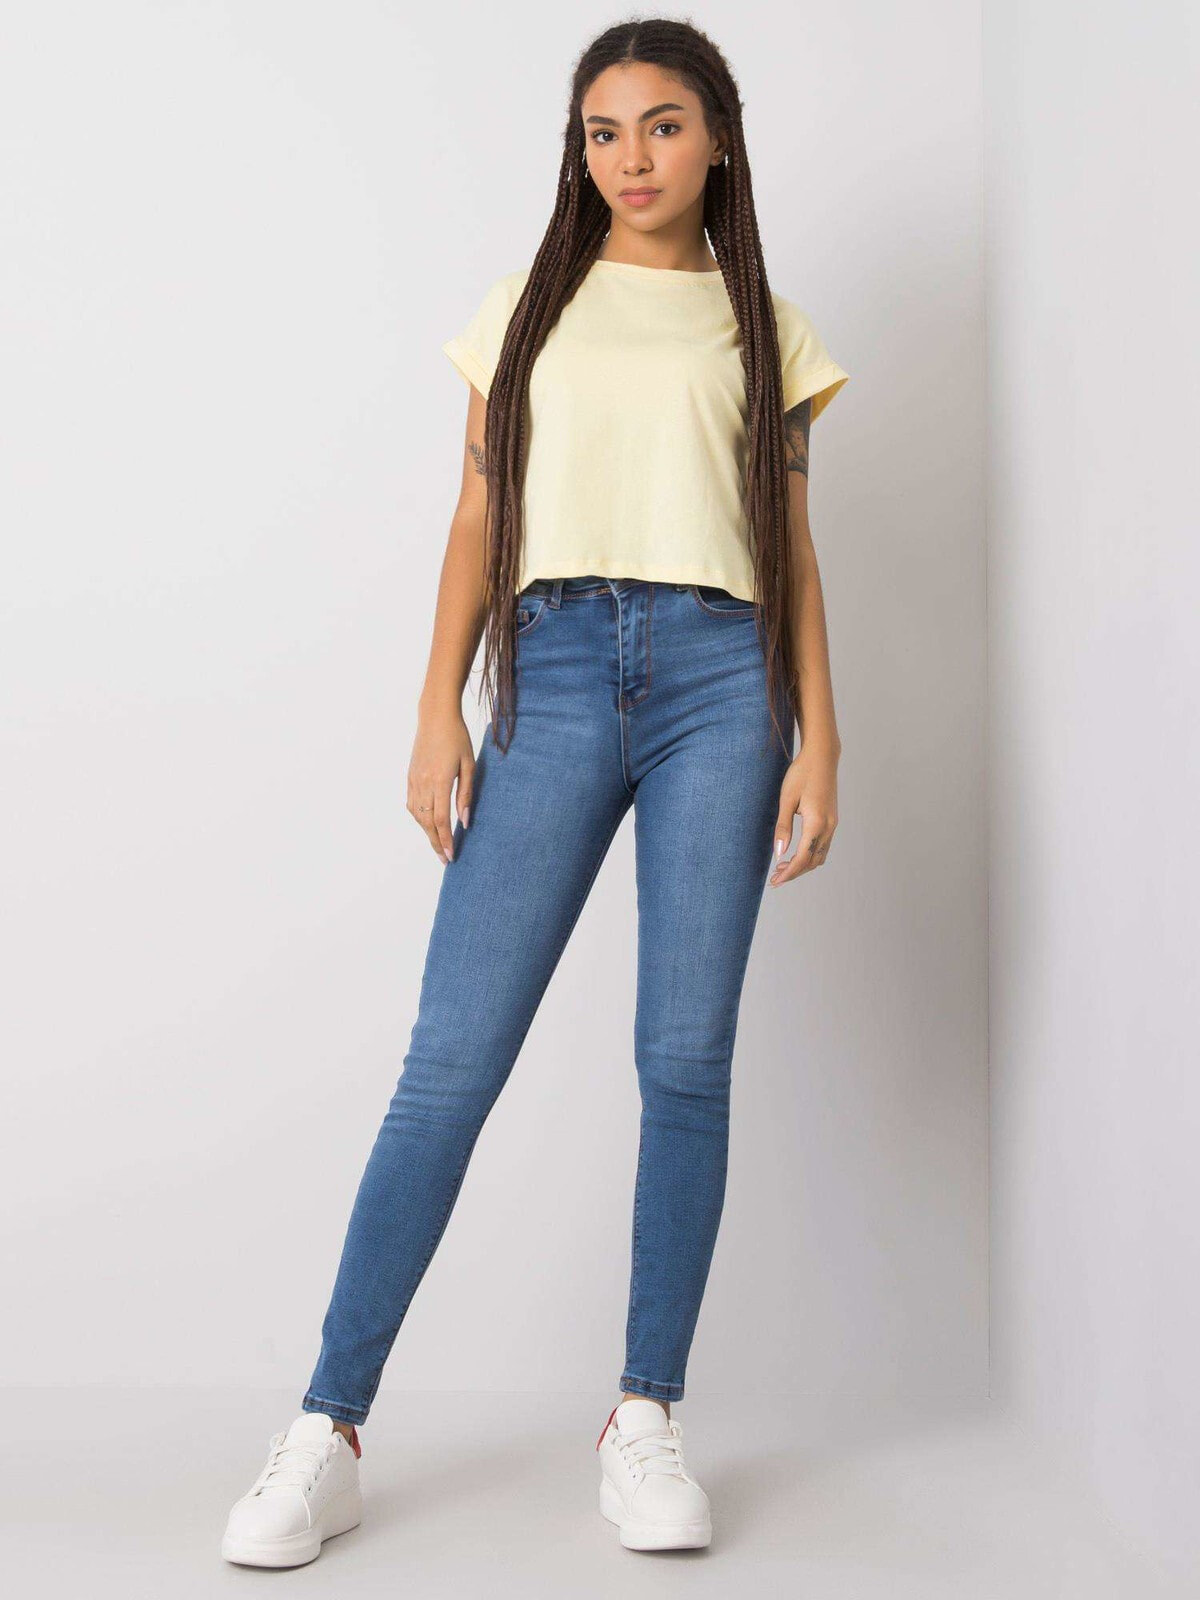 Женские джинсы  скинни с высокой посадкой синие Factory Price